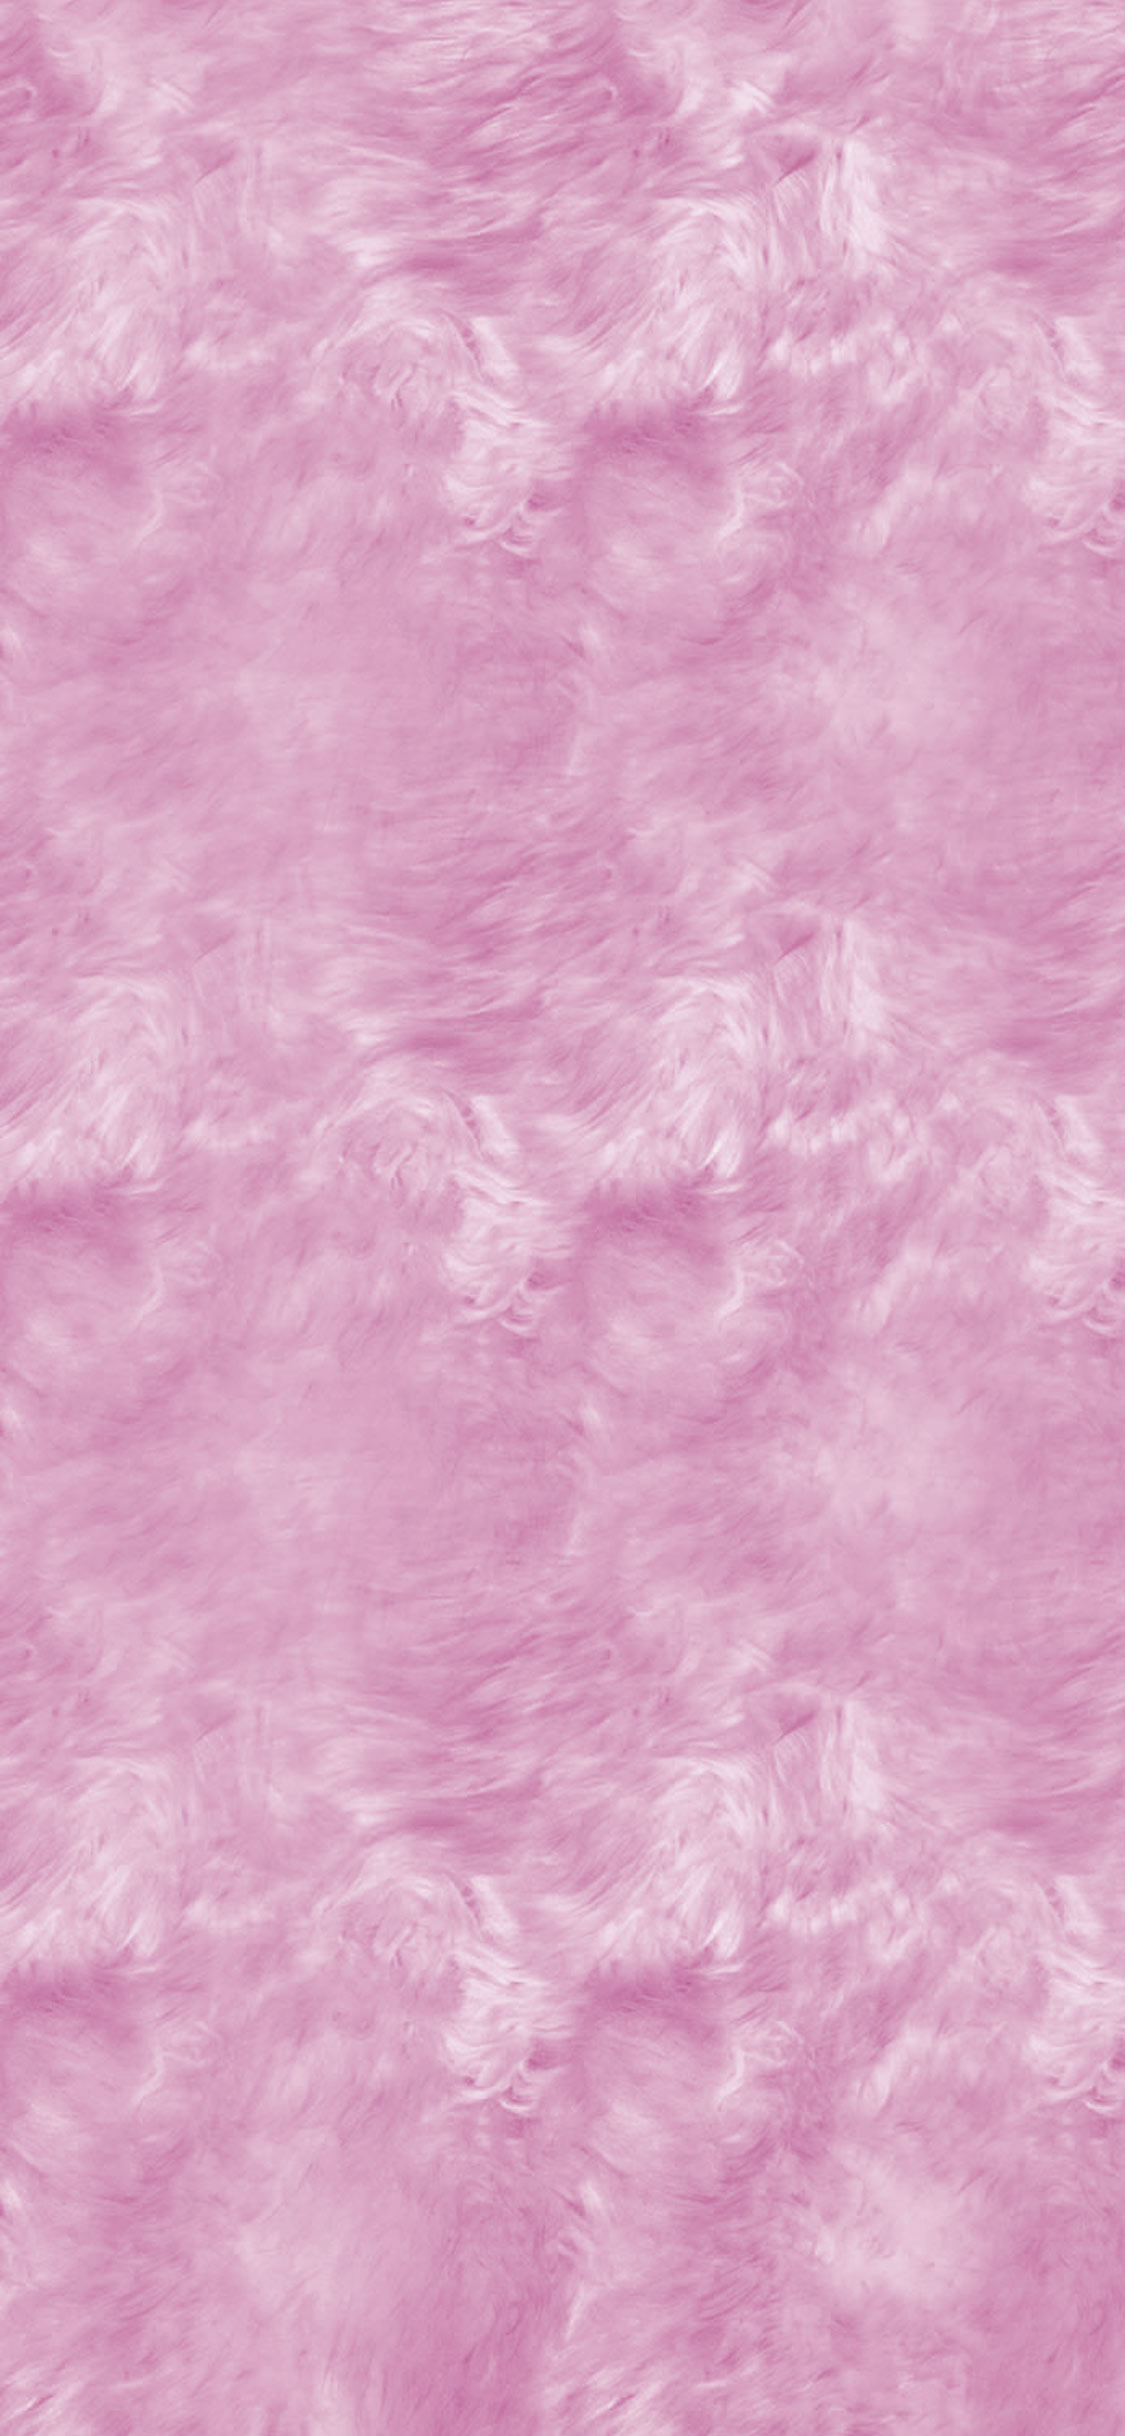 phone wallpaper displaying fur // pink